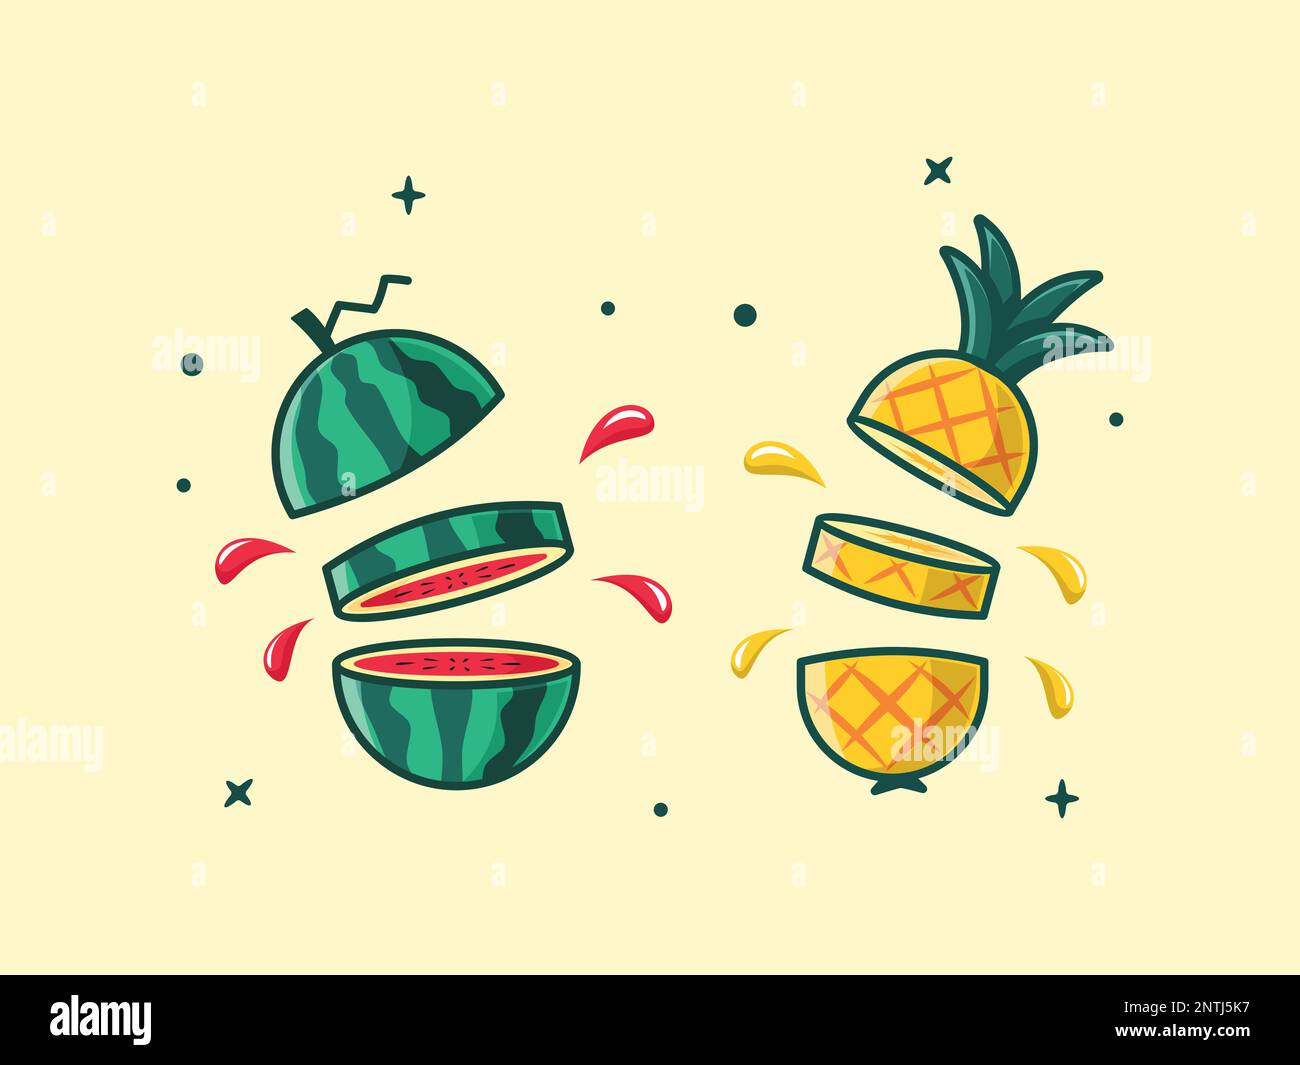 Abbildung: Frische Wassermelone und Ananasspalte und Spritzer Abbildung. Stock Vektor